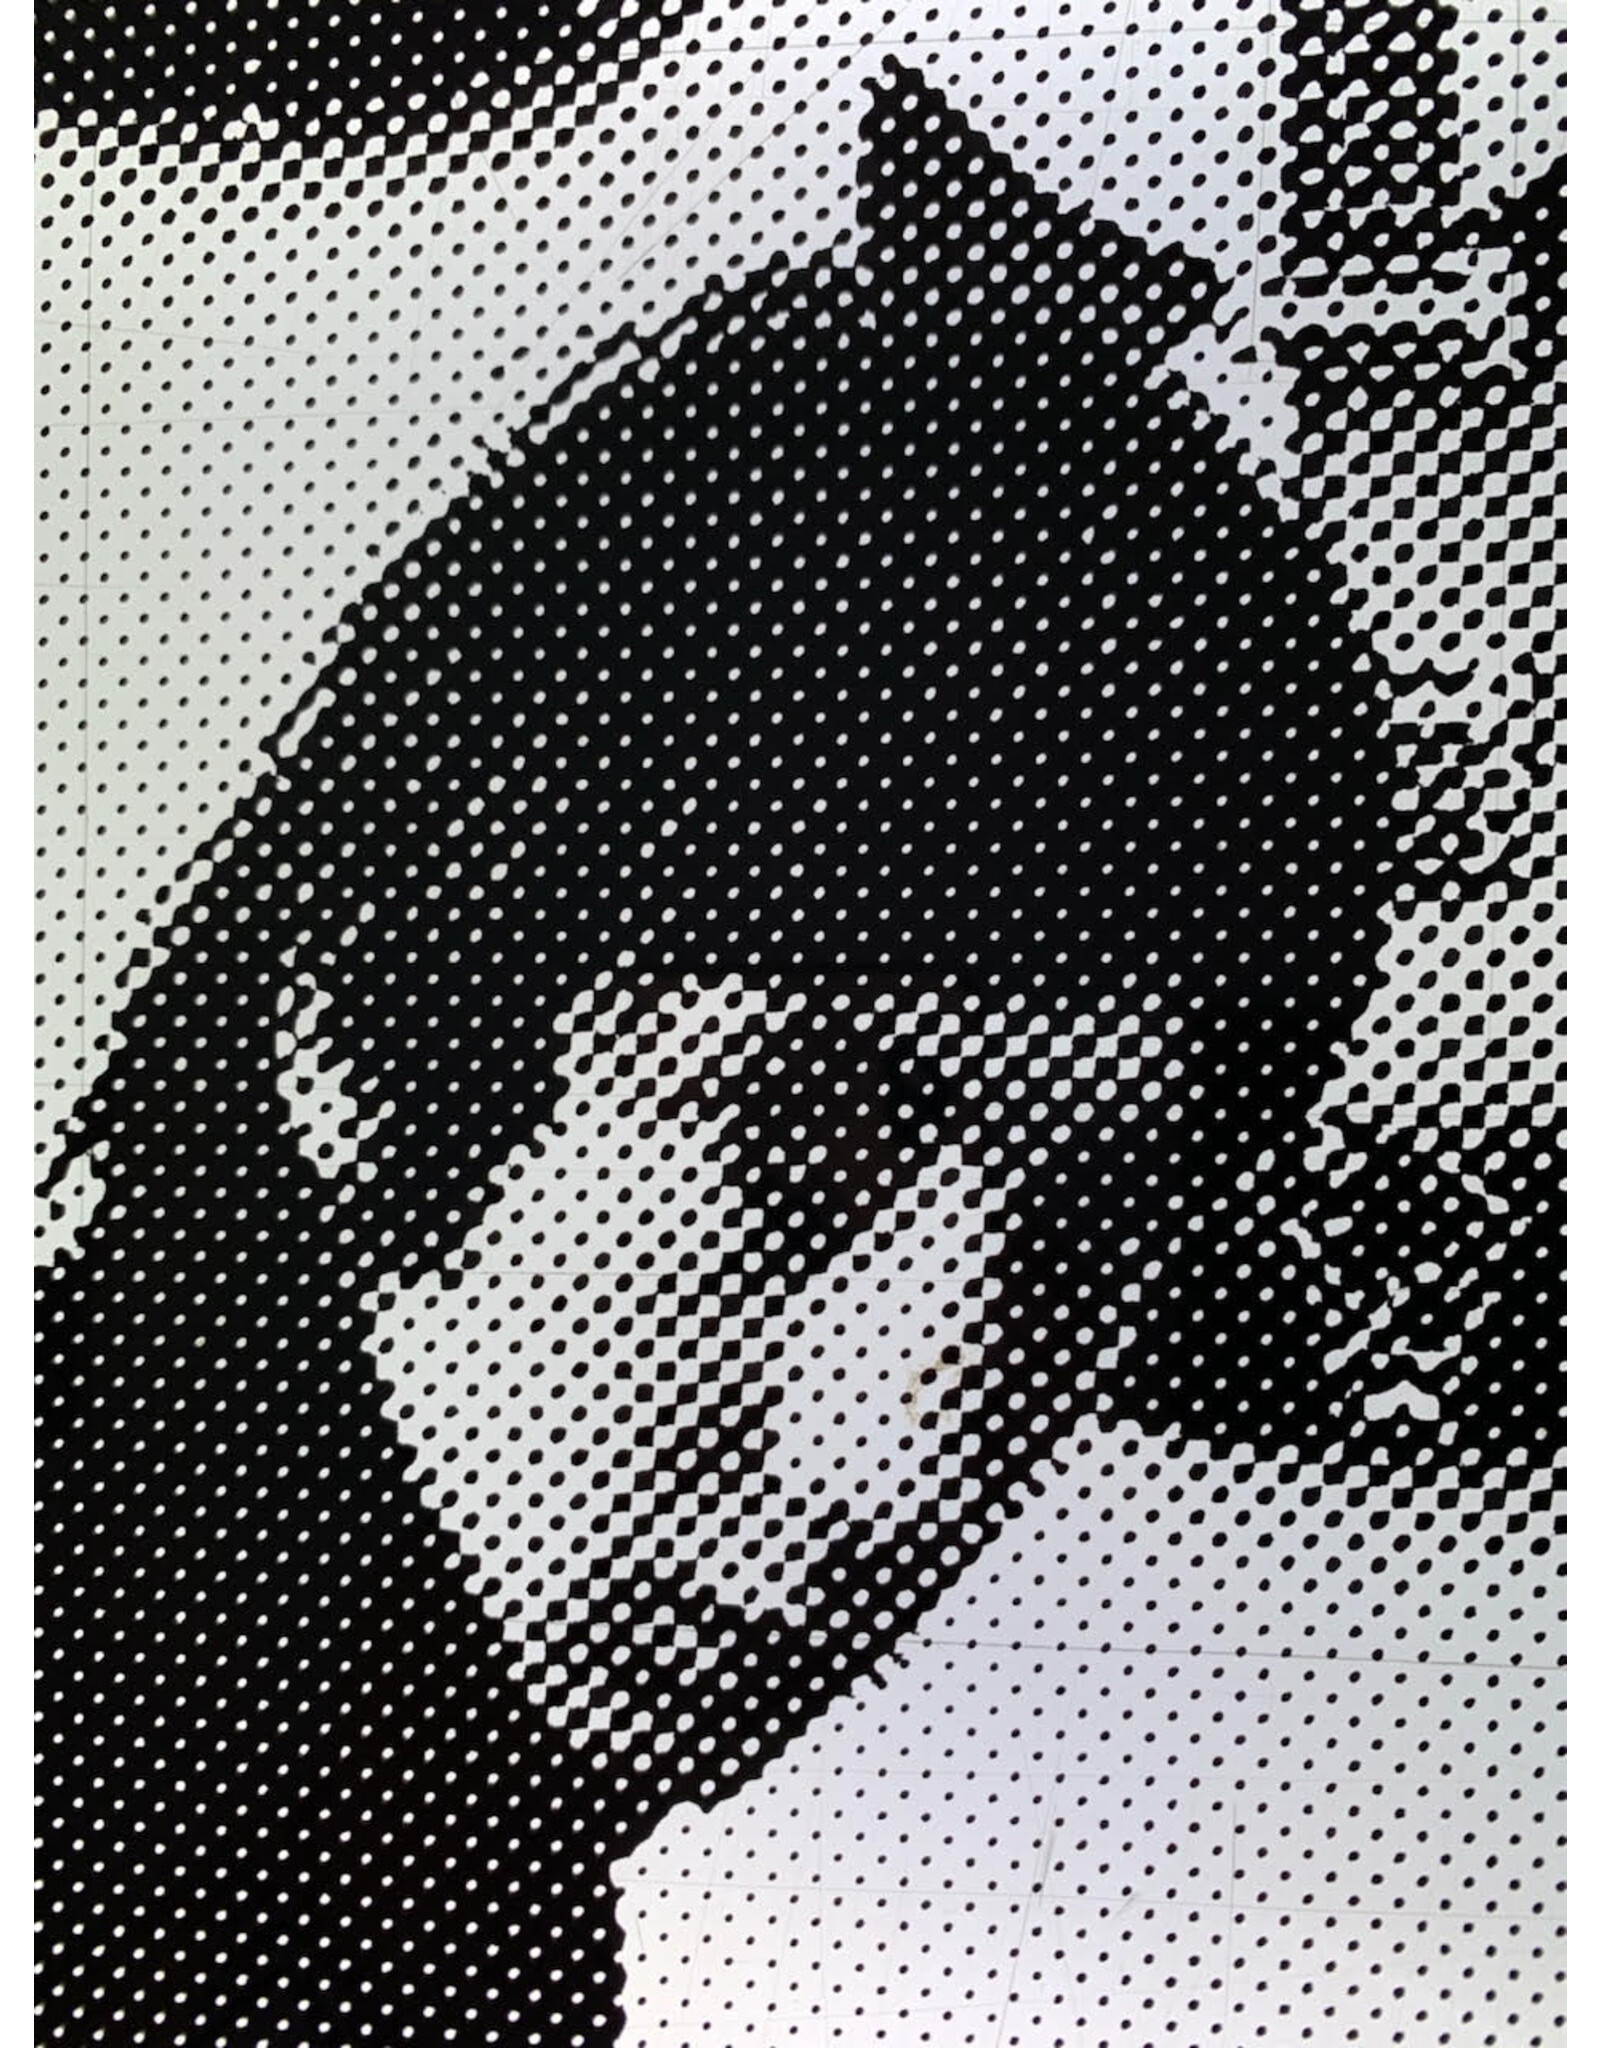 Vincent McEvoy Pete Townshend at Home, 1966 by Colin Jones. Vincent McEvoy (1)